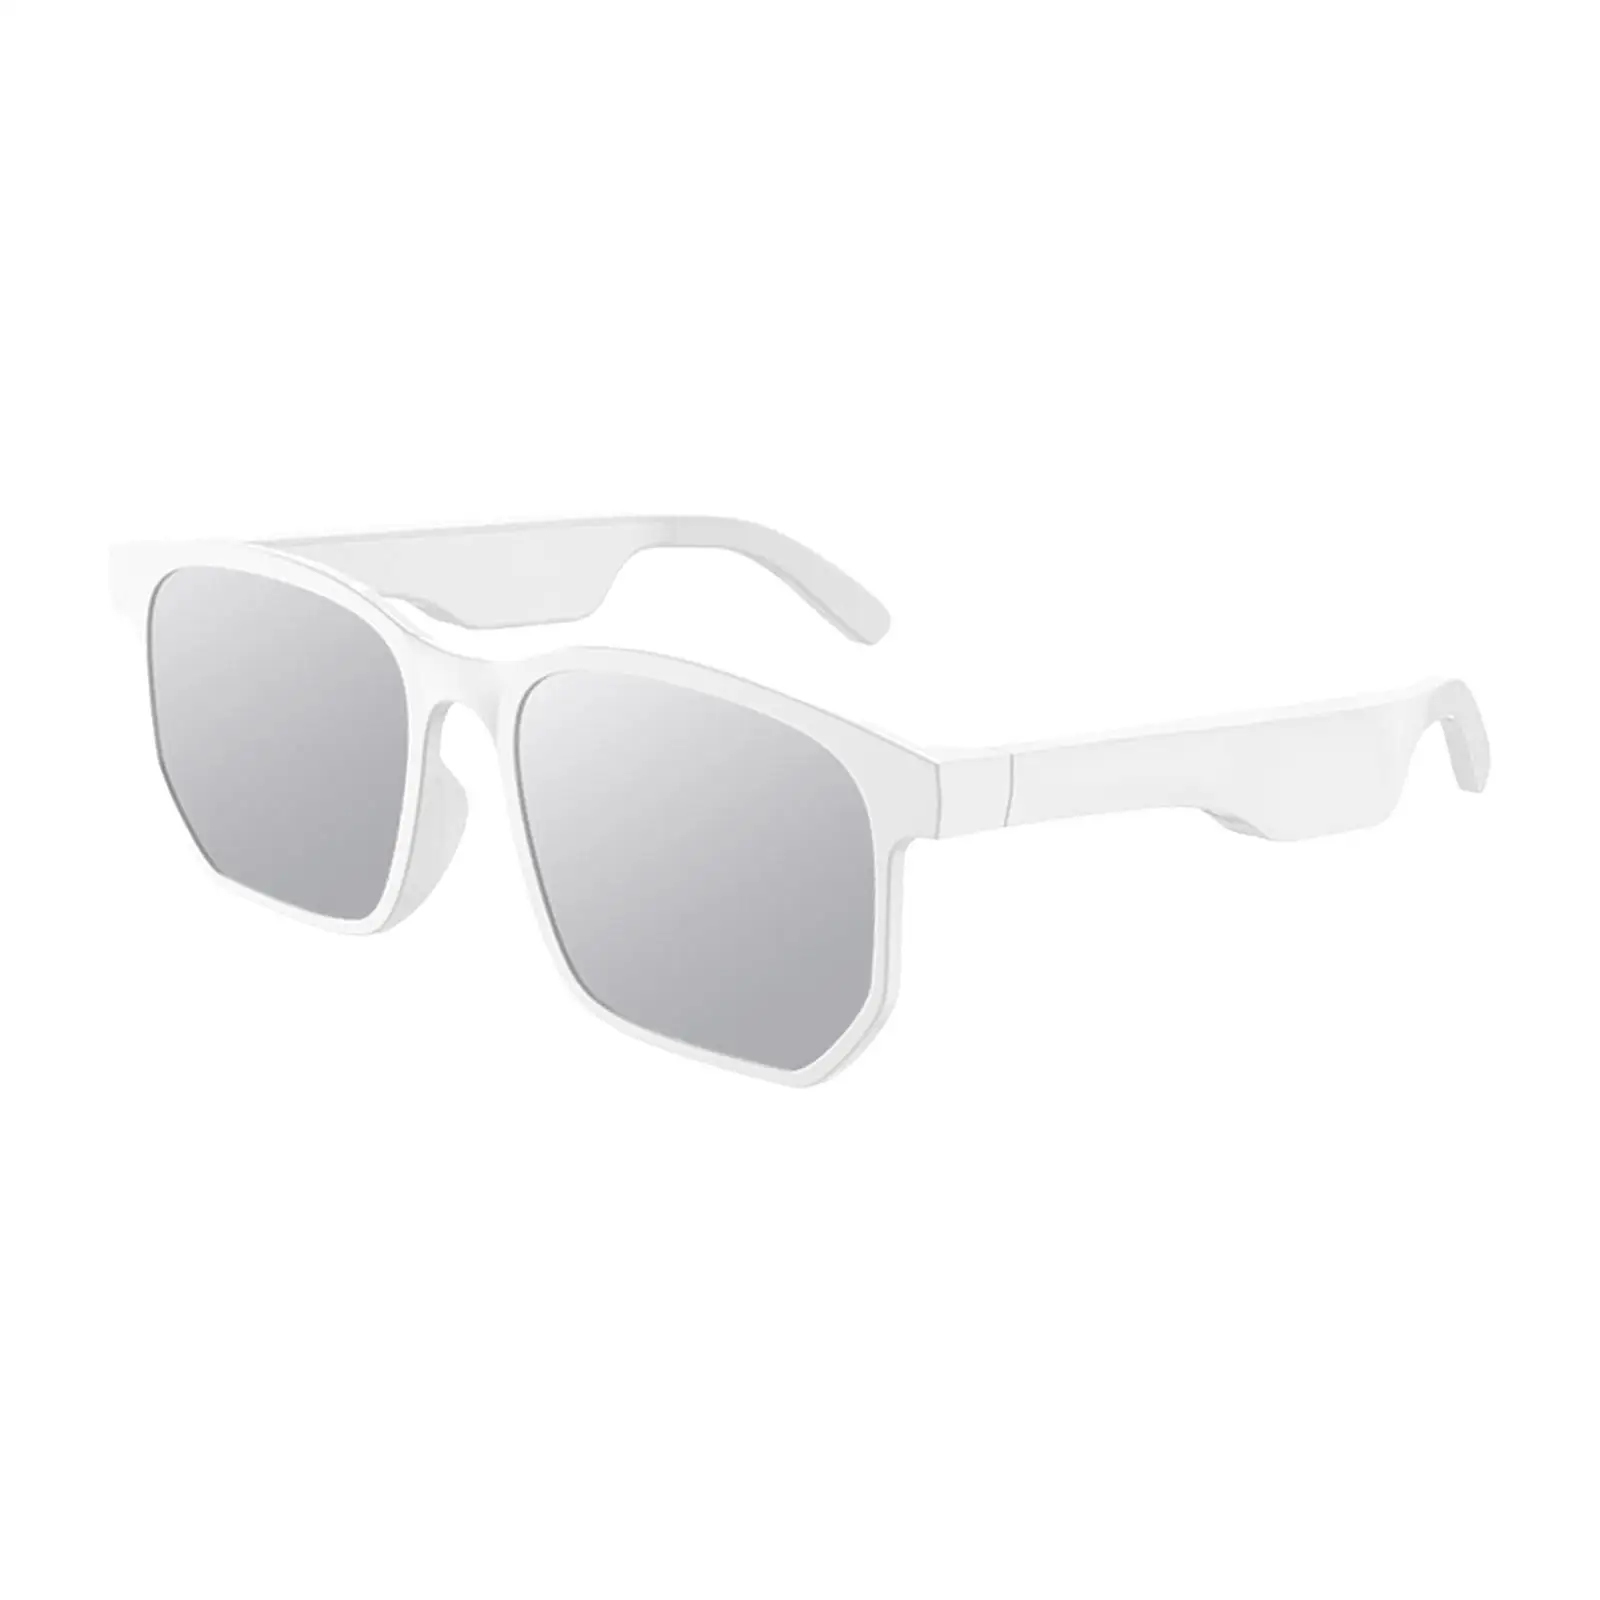 Bluetooth Audio Sunglasses Smart Glasses Open Ear Speakers V5.0 for Golfing